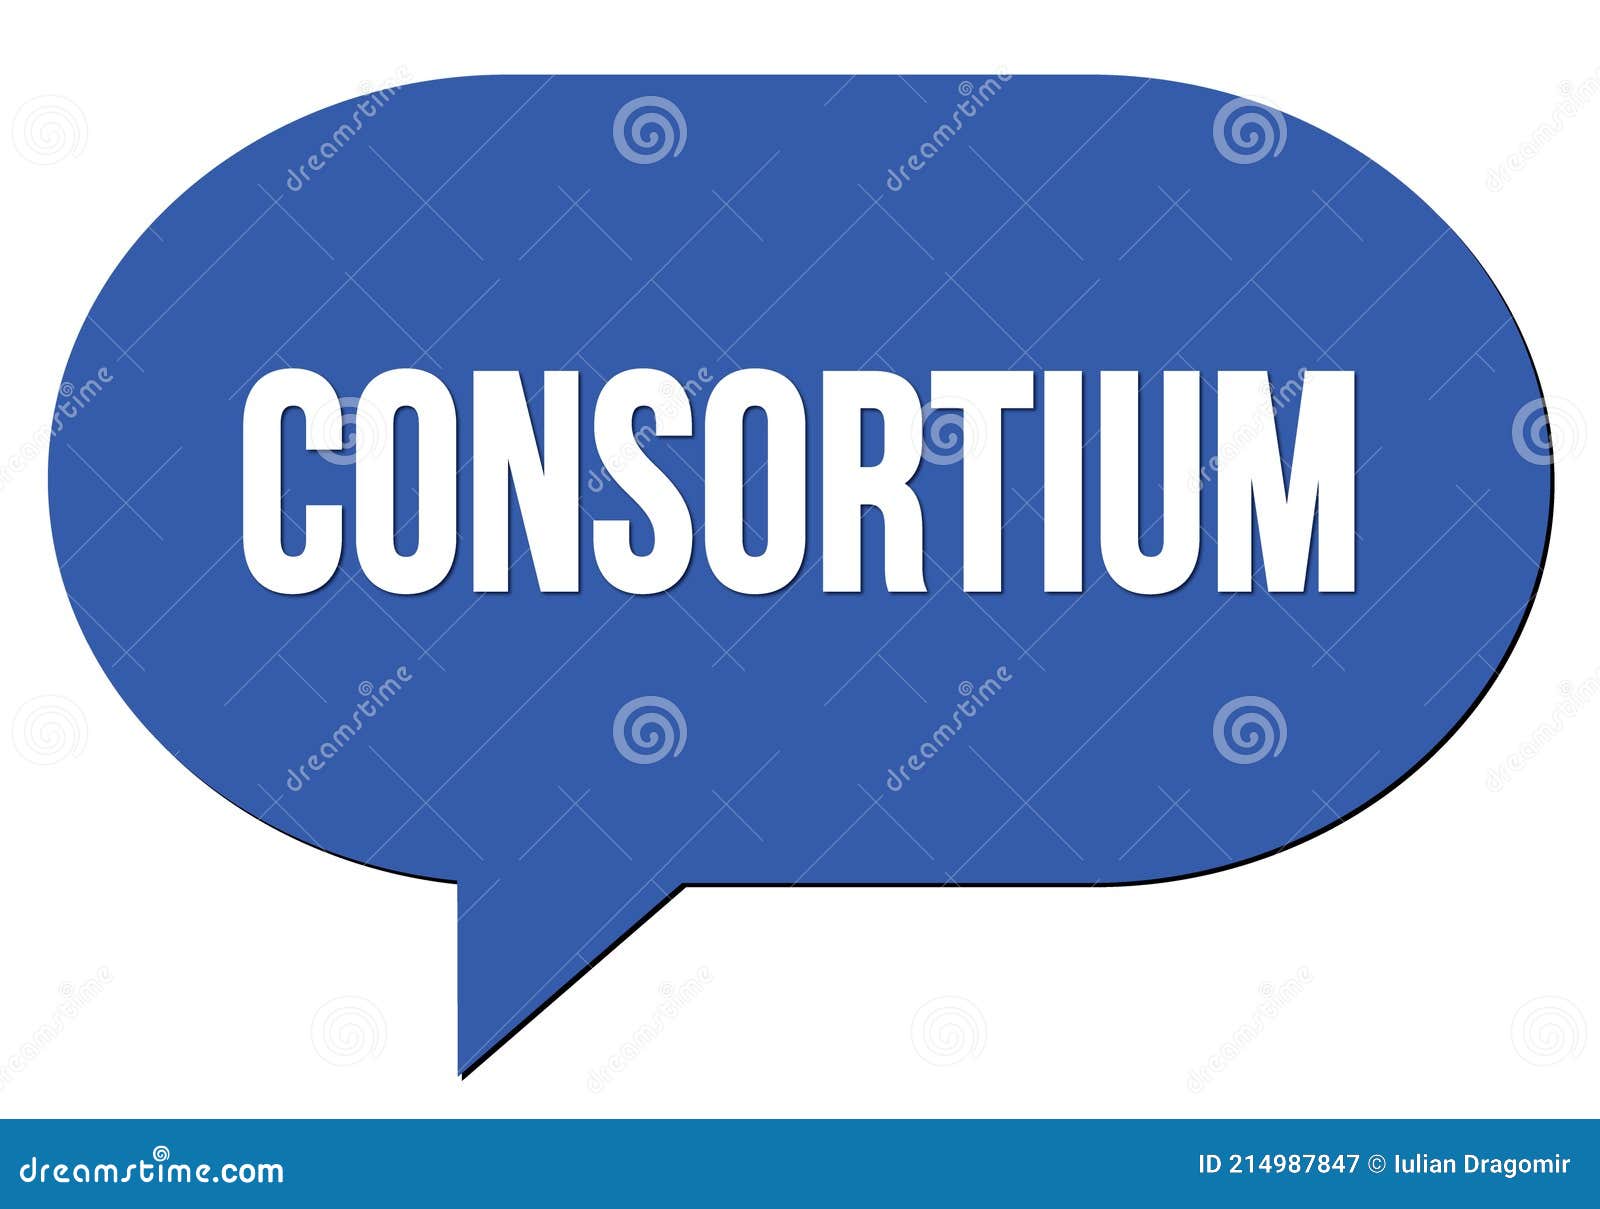 consortium text written in a blue speech bubble